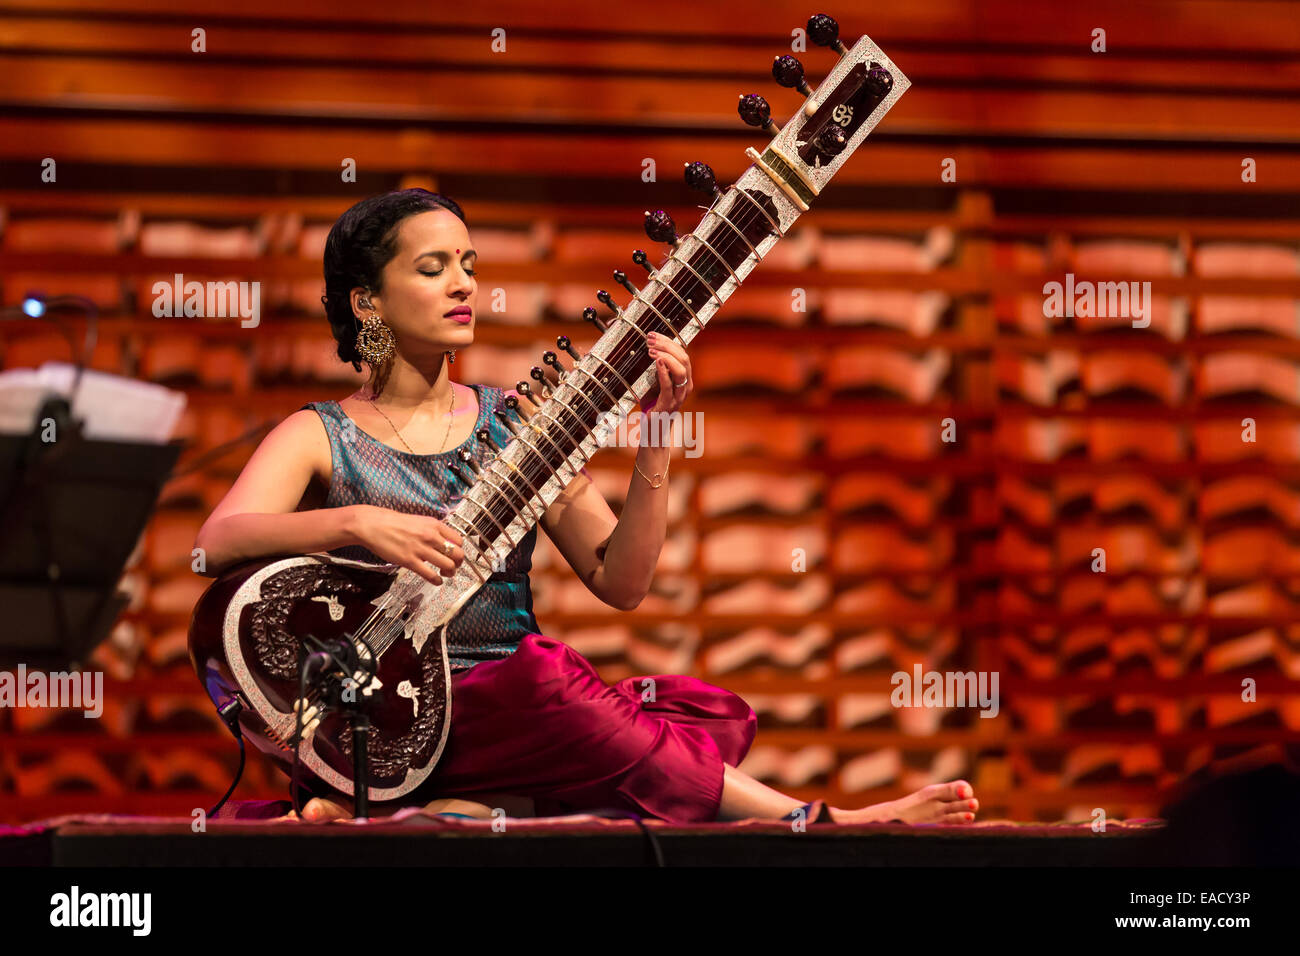 El sitar indio jugador Anoushka Shankar, la sala de conciertos del KKL, Lucerna, Suiza Foto de stock